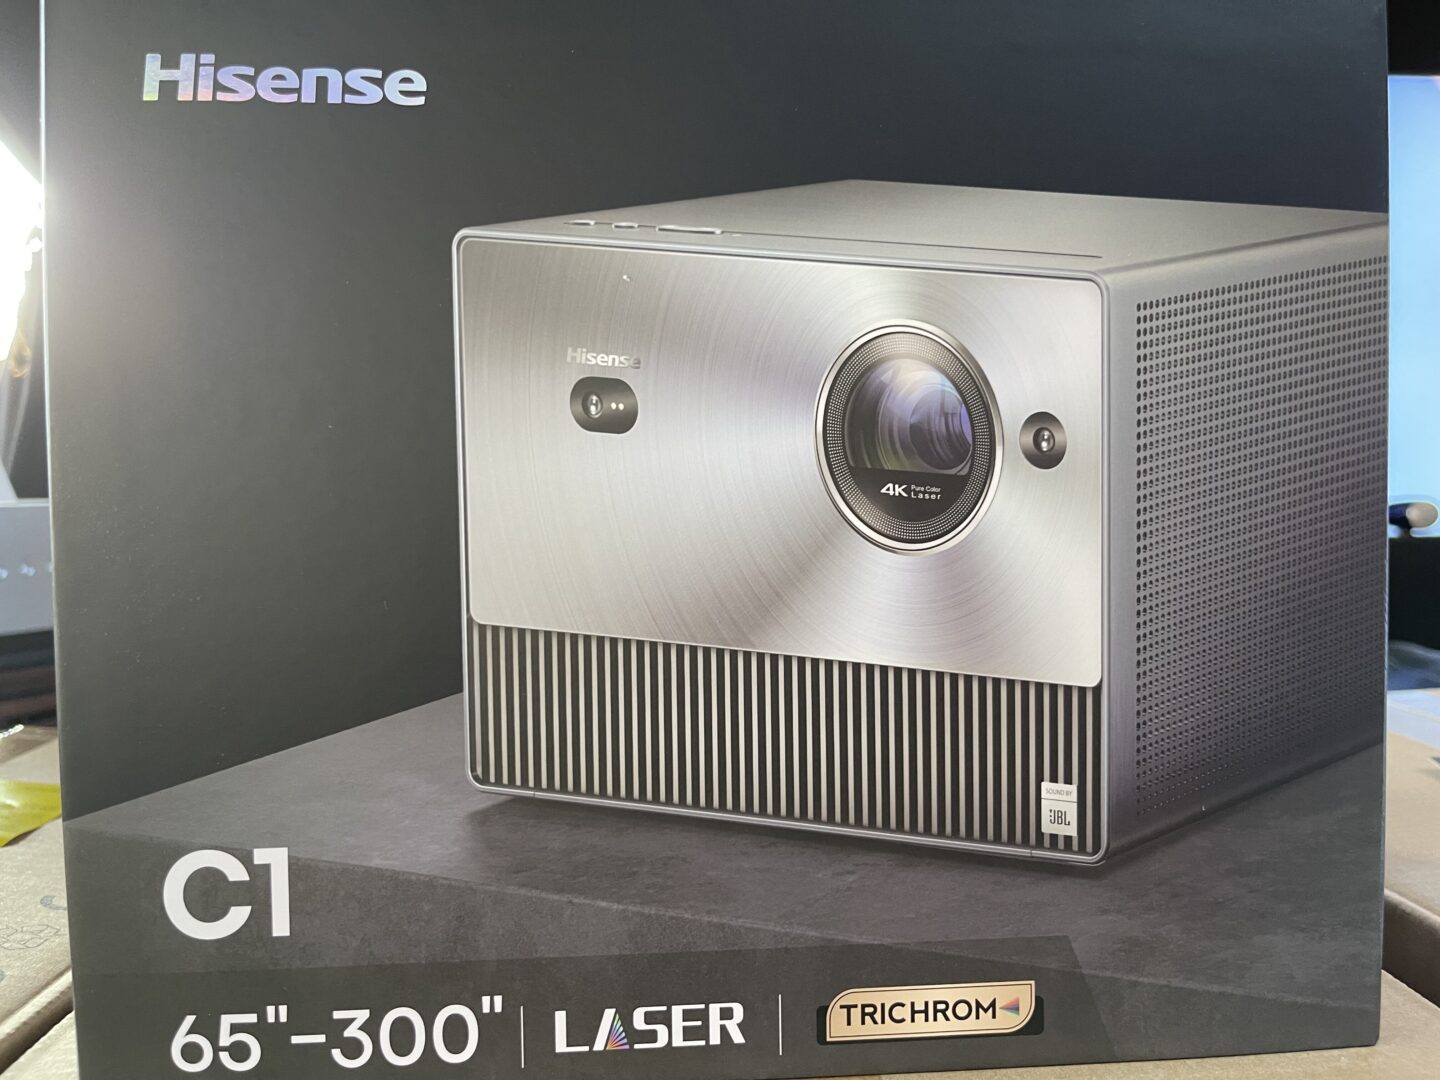 Hisense C1 halo : r/projectors